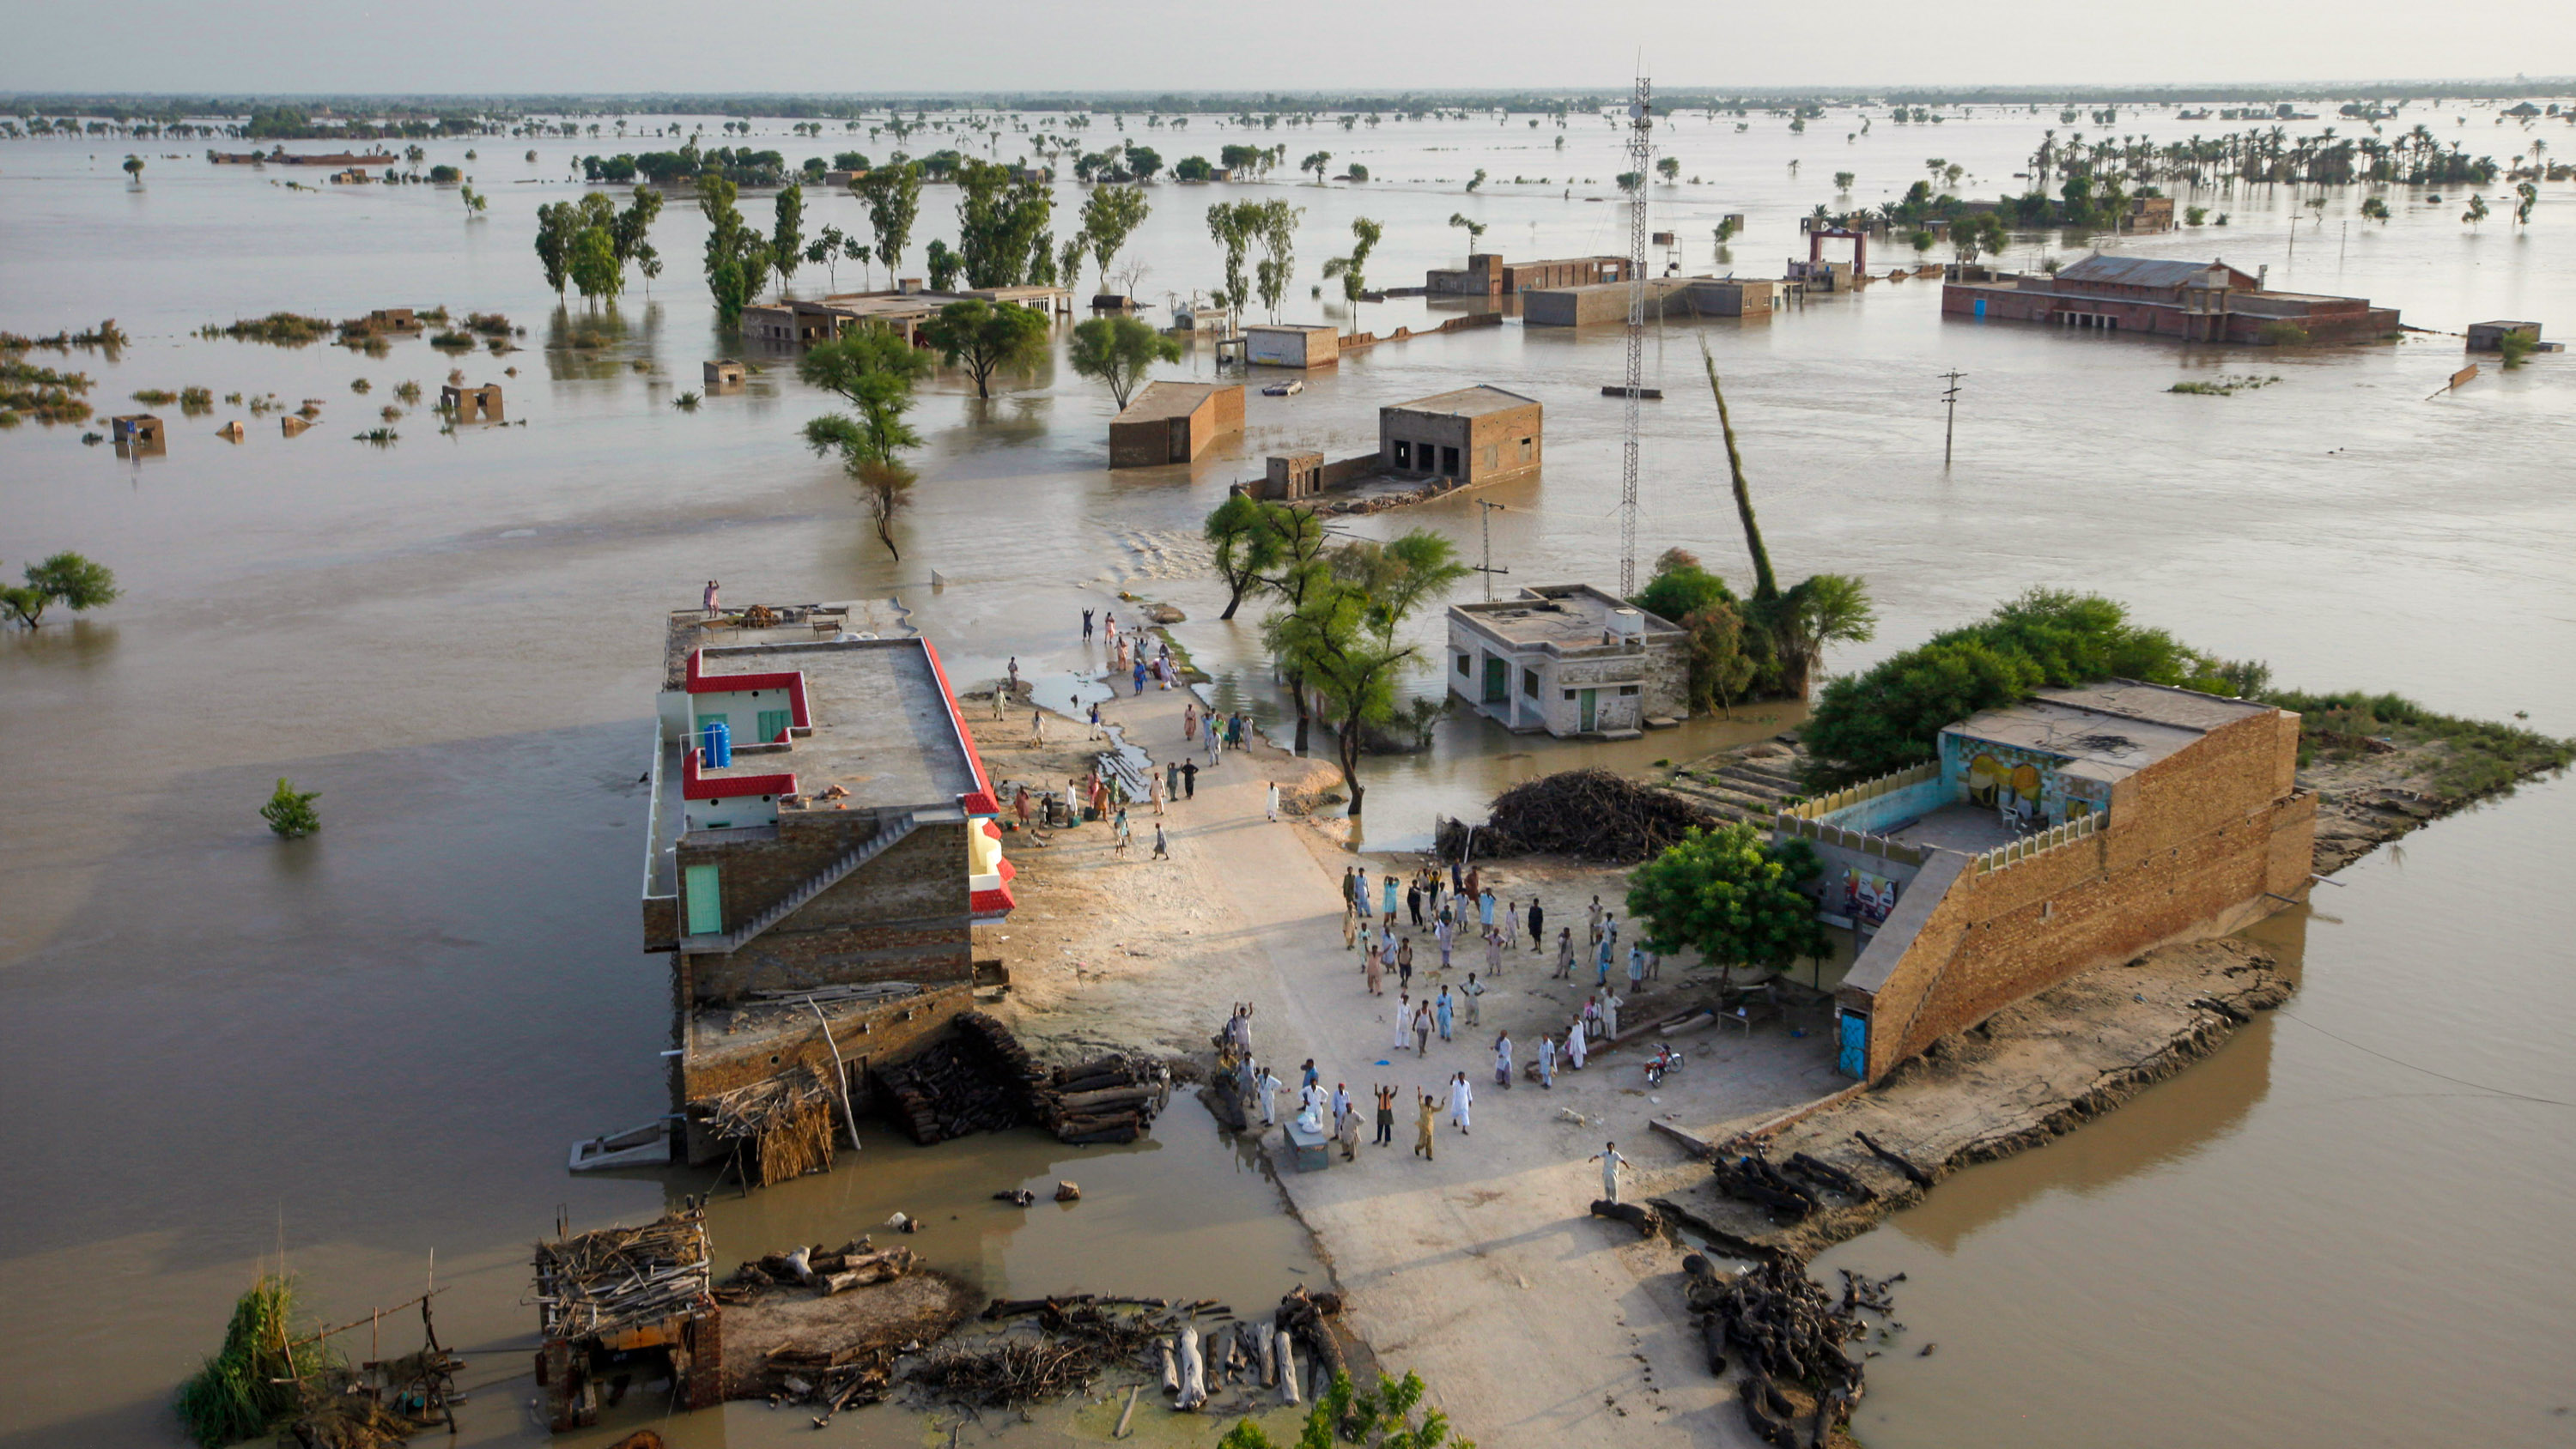 plano general desde un helicóptero de un pueblo inundado en Pakistán. Personas varadas piden ayuda desde un área seca.